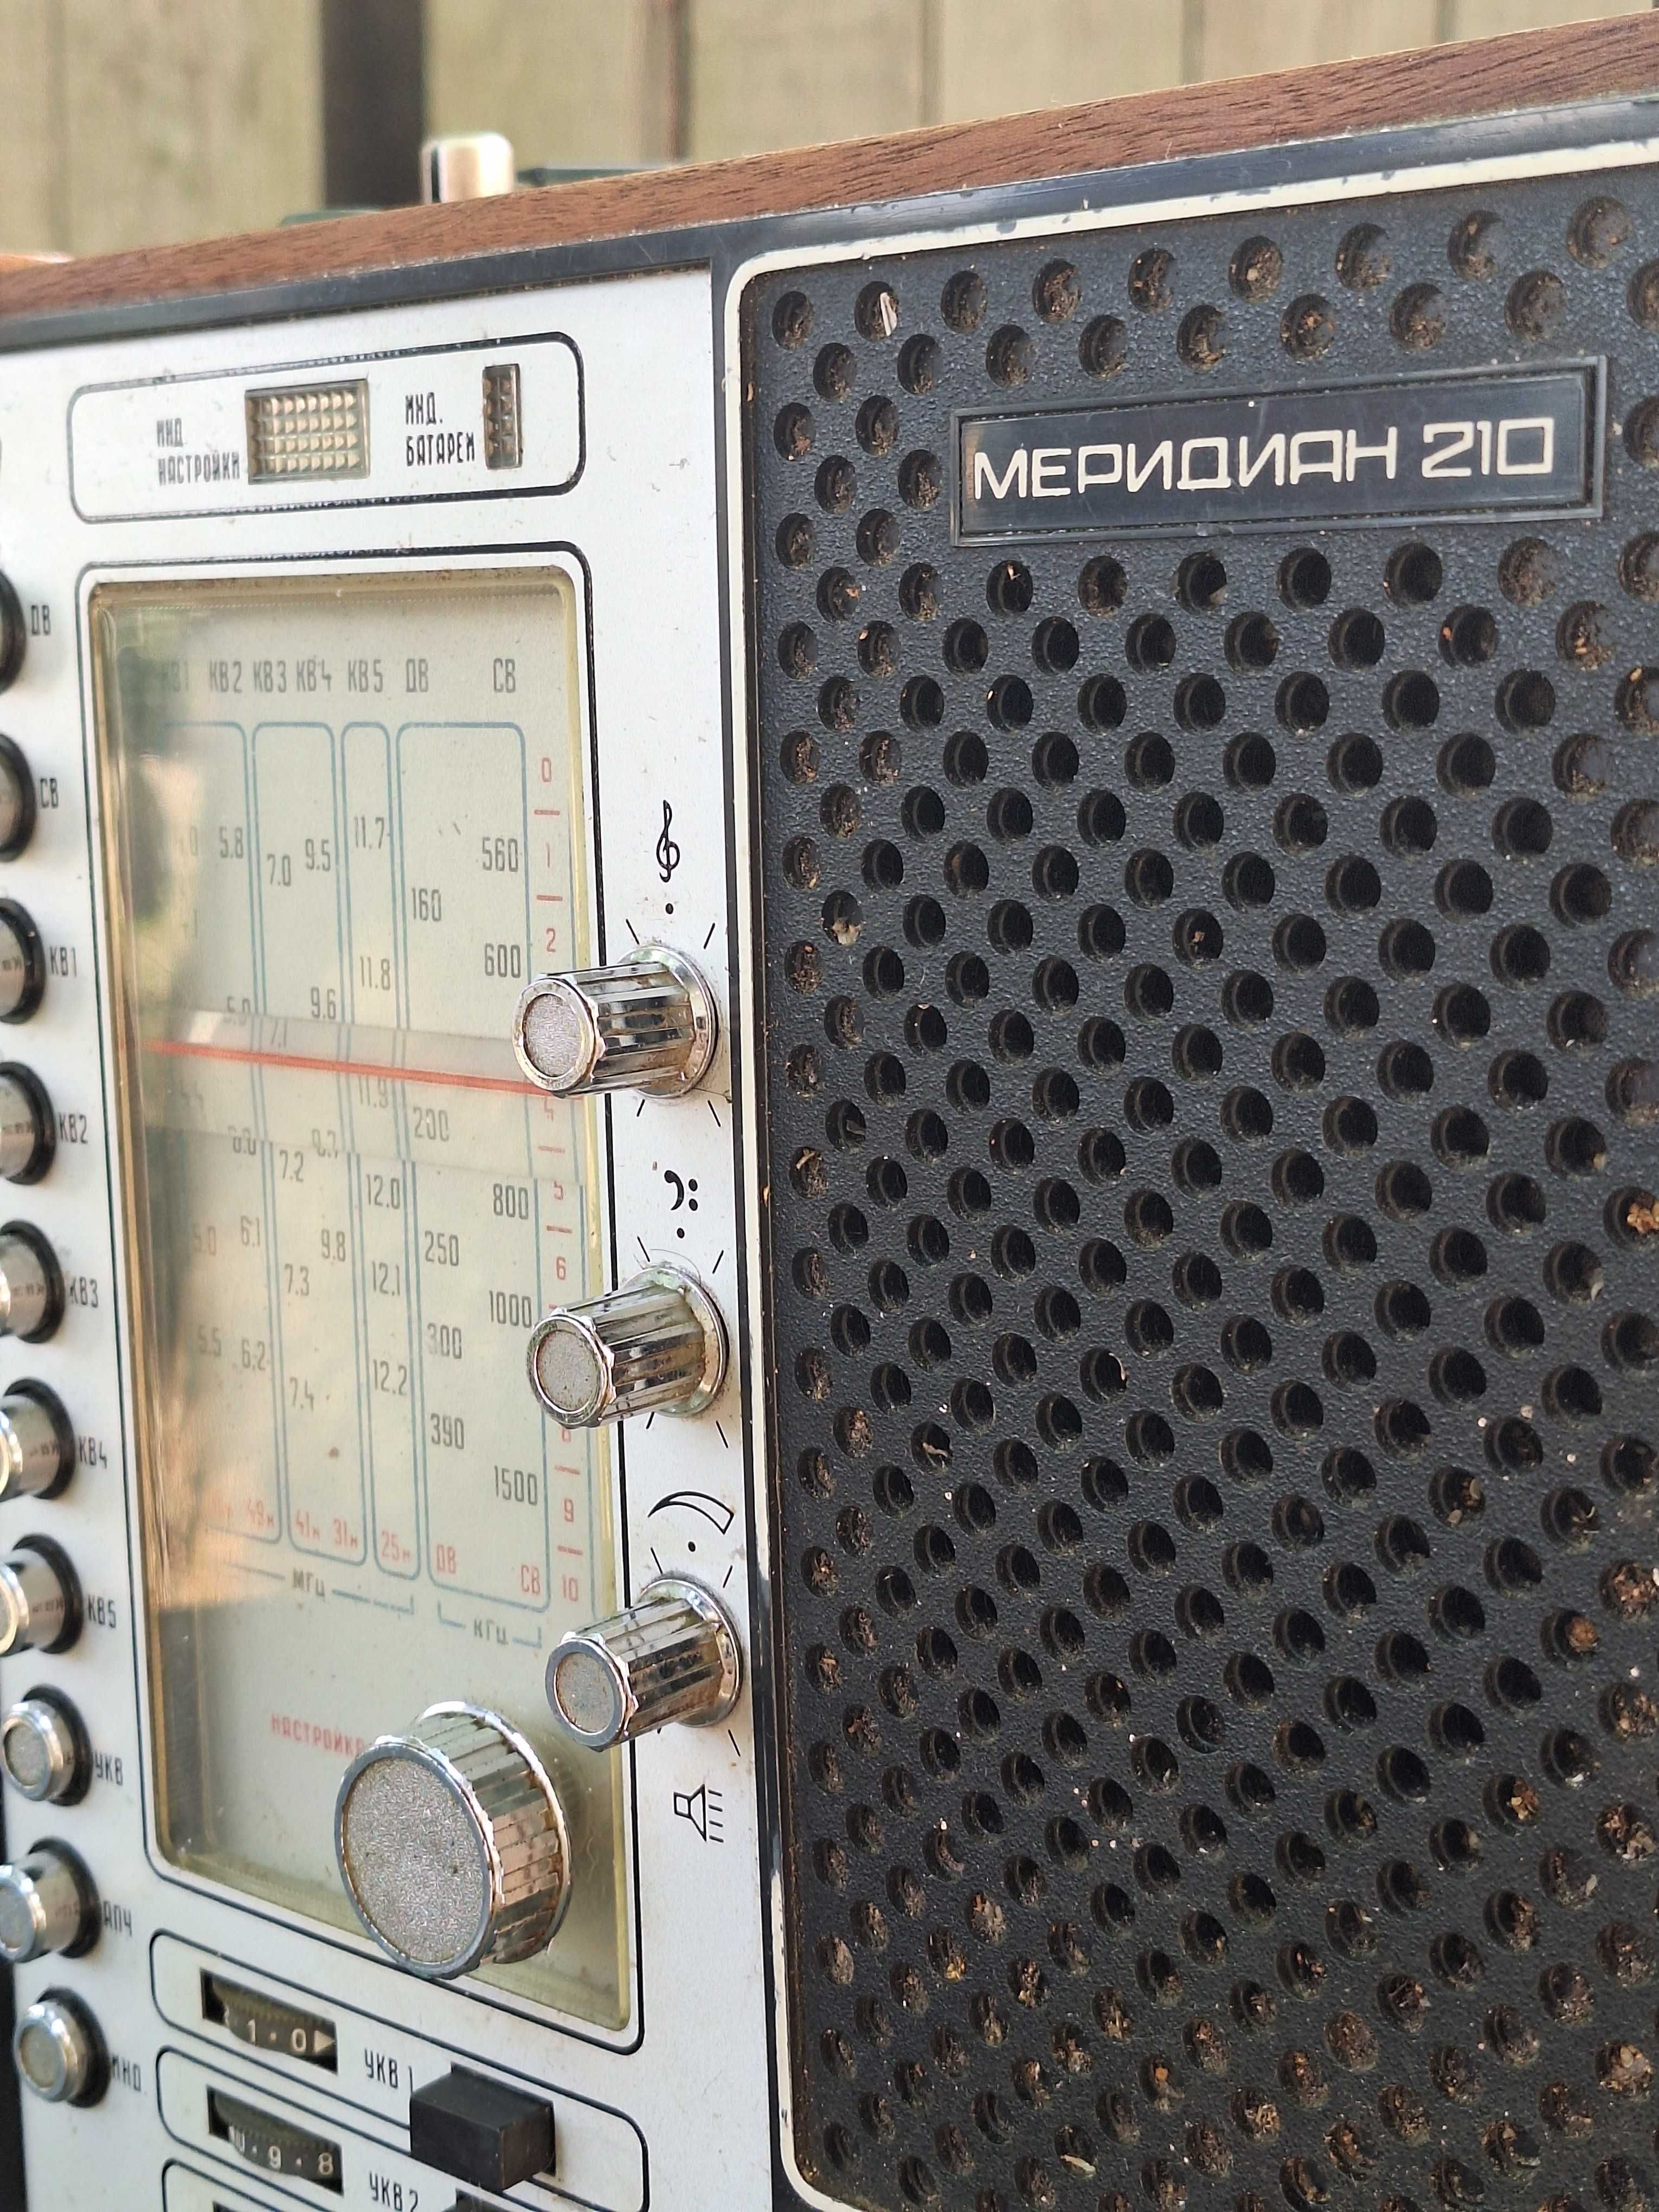 радіоприймач "меридиан 210"